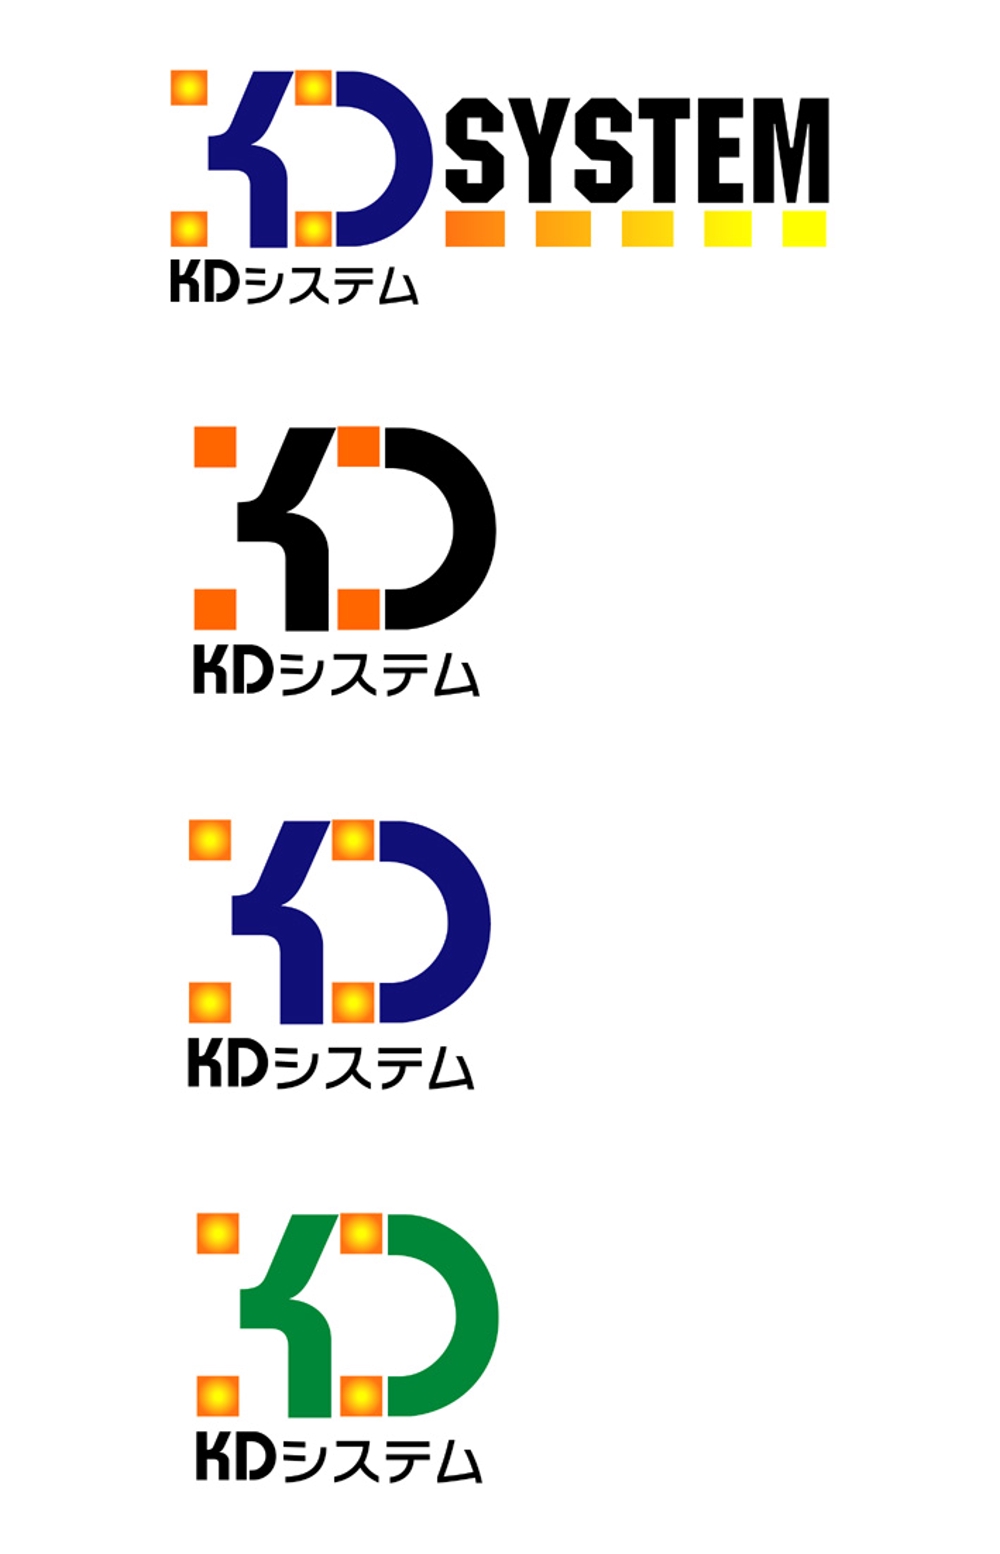 KD1.jpg